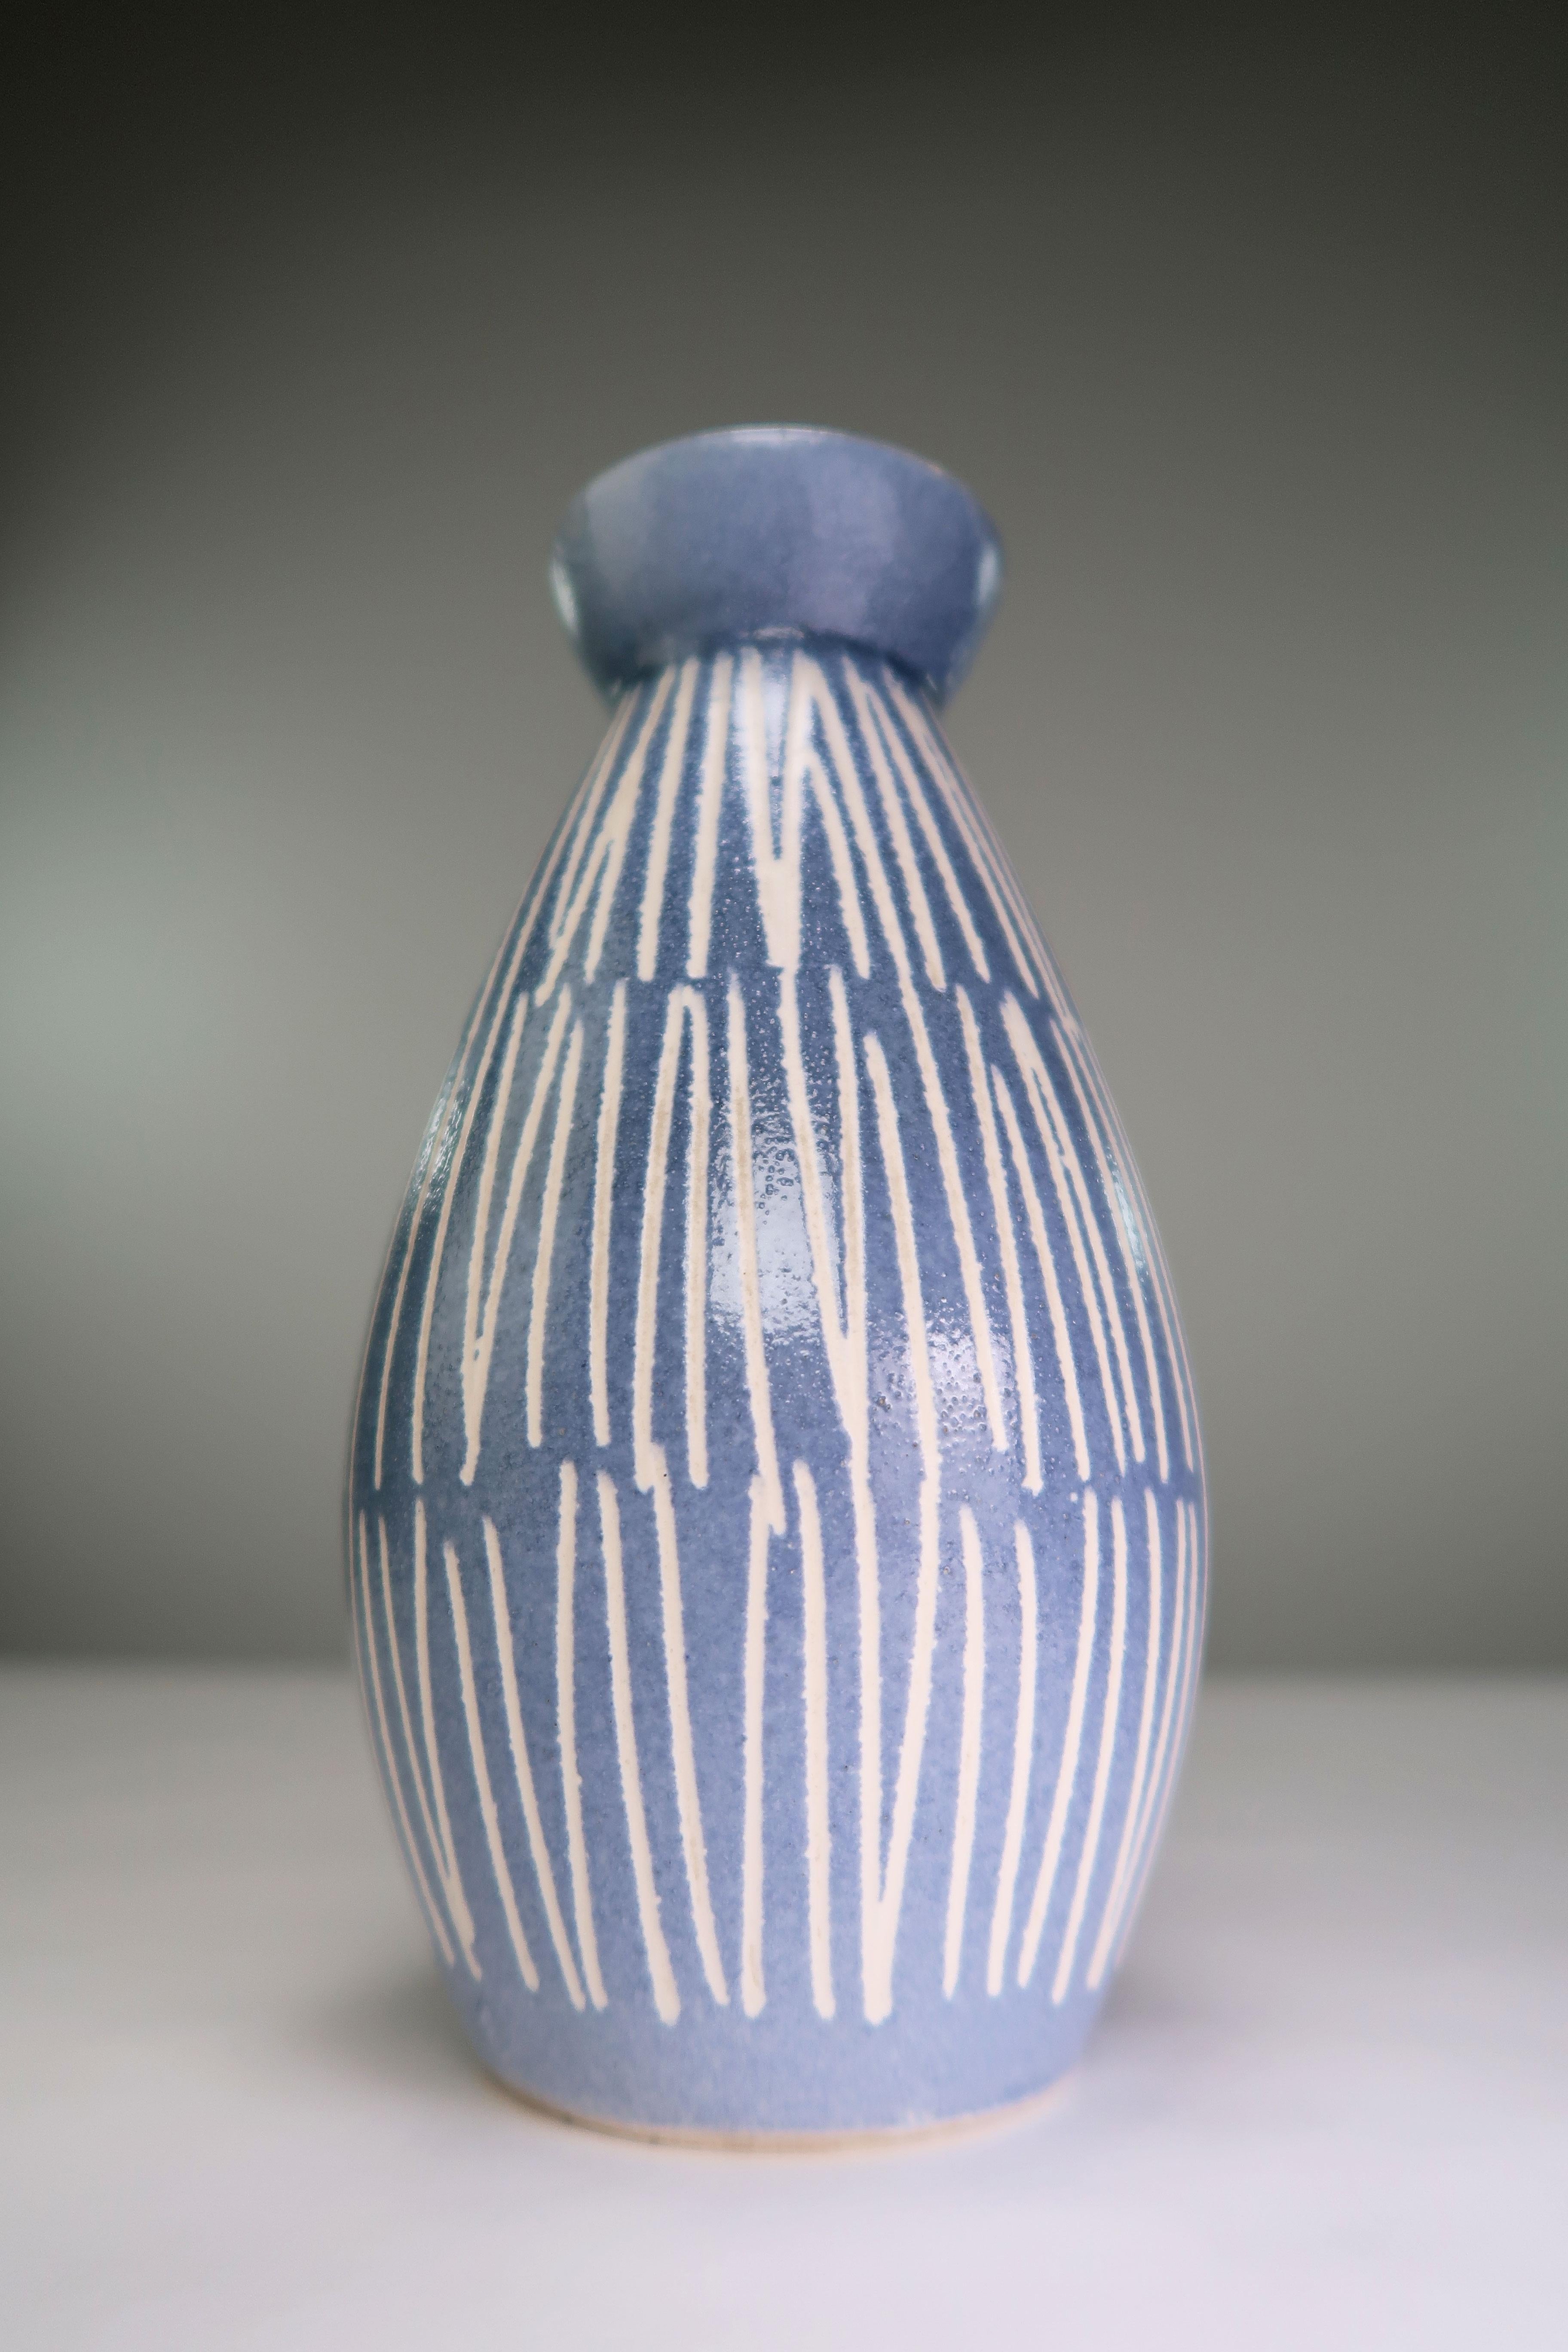 Magnifique vase vintage bleu clair des années 1960. Bandes blanches fines et précises sur fond bleu clair avec intérieur glacé en noir et vert sur les bords supérieurs. Signé sous la base. En très bon état.
Scandinavie, années 1960.